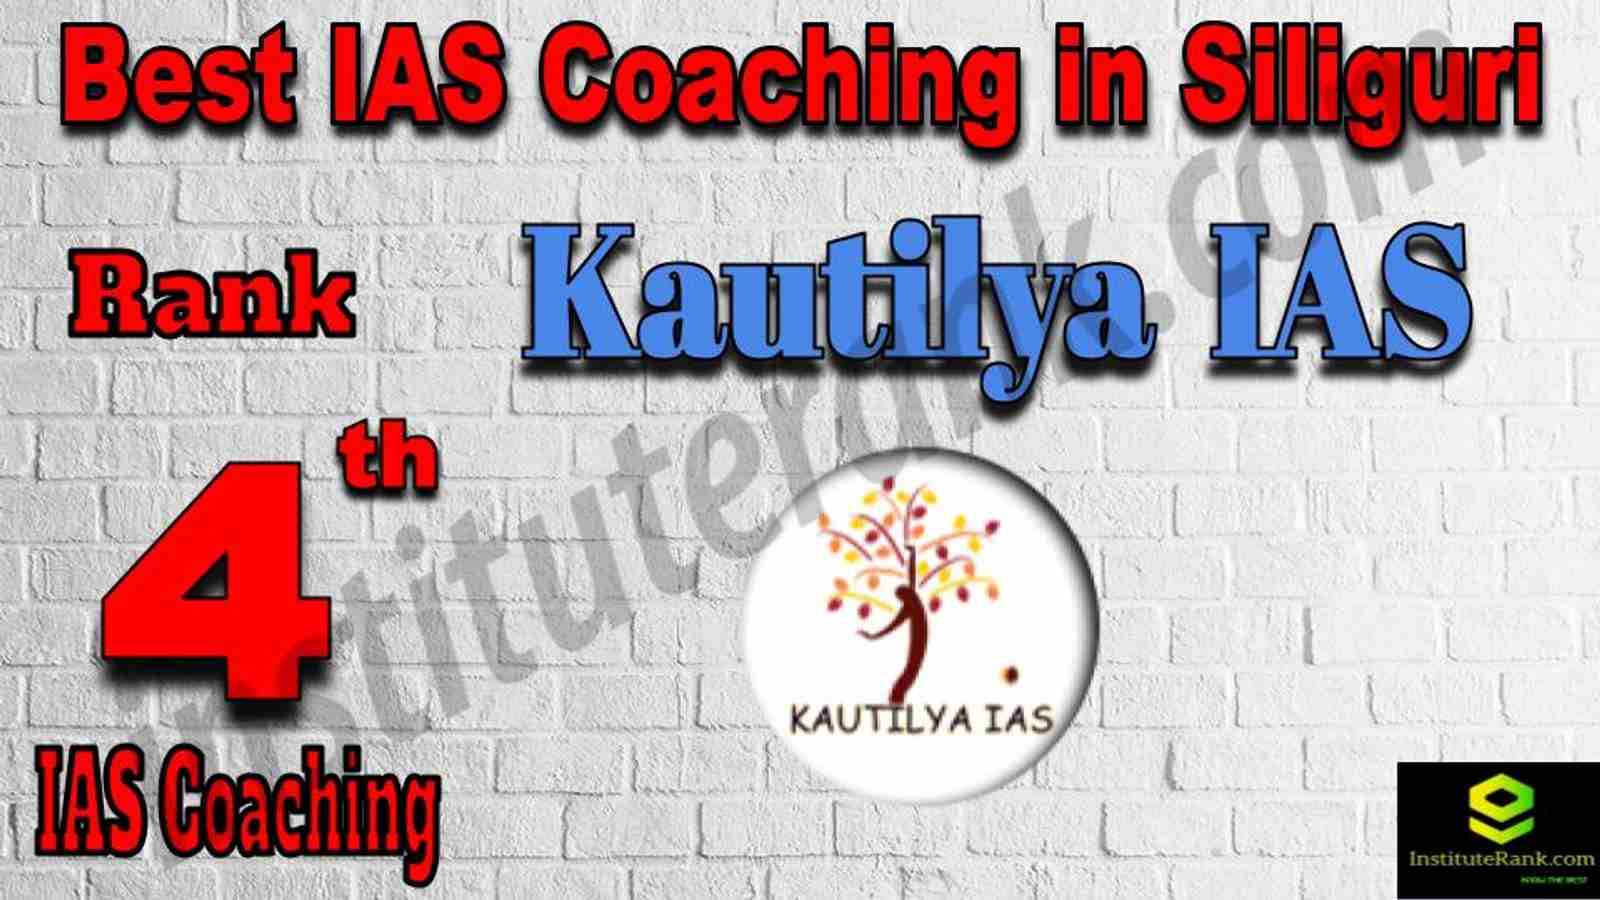 4th Best IAS Coaching in Siliguri